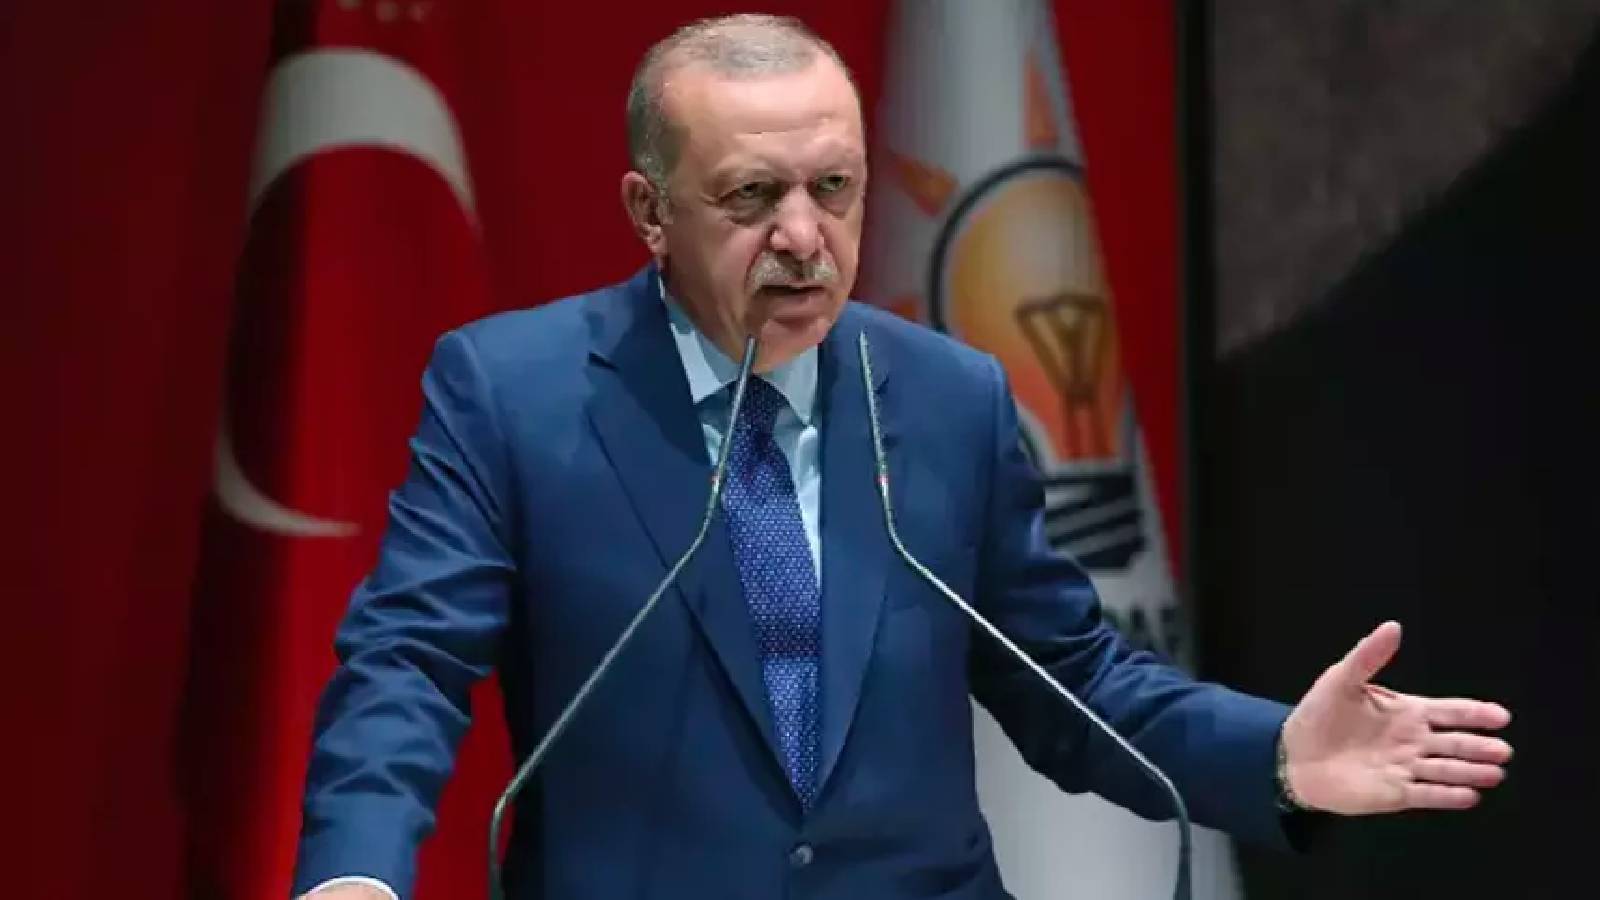 Kulis | Havayollarındaki rötarlara ilişkin Erdoğan’dan talimat: Bu işi çözün, sorumluları hesaba çekin